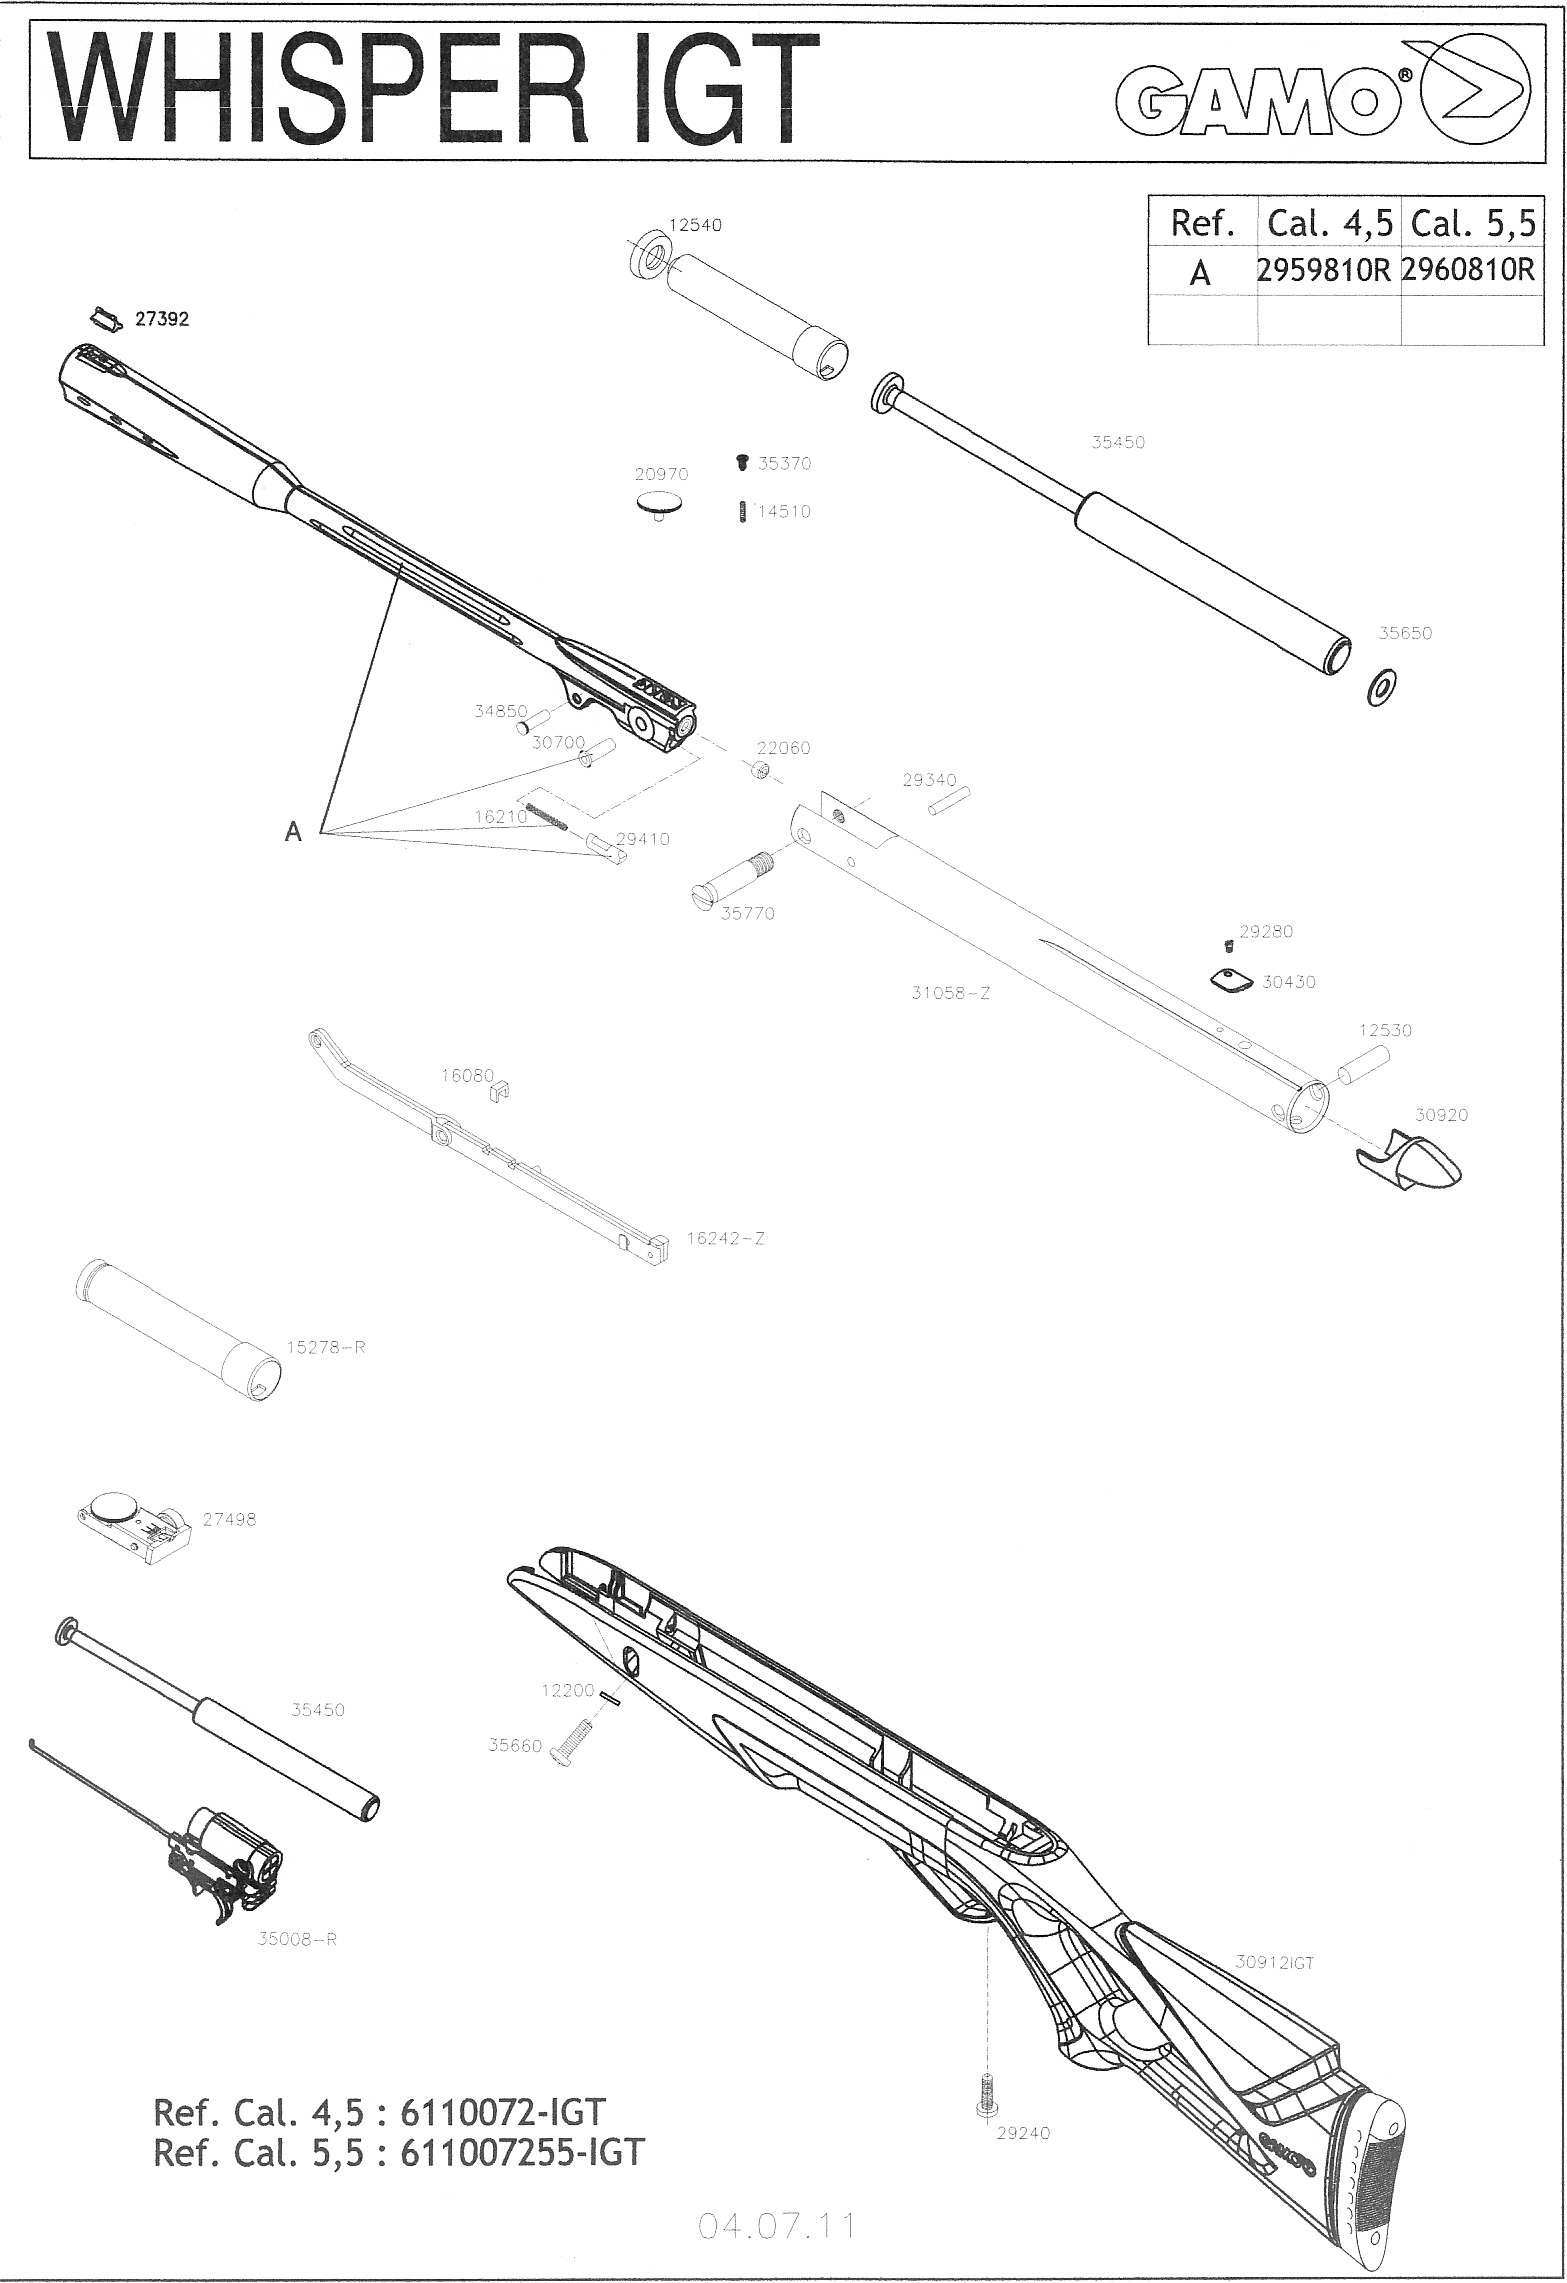 Gamo air rifle parts diagram as well nitro piston 2 parts diagram besides.....